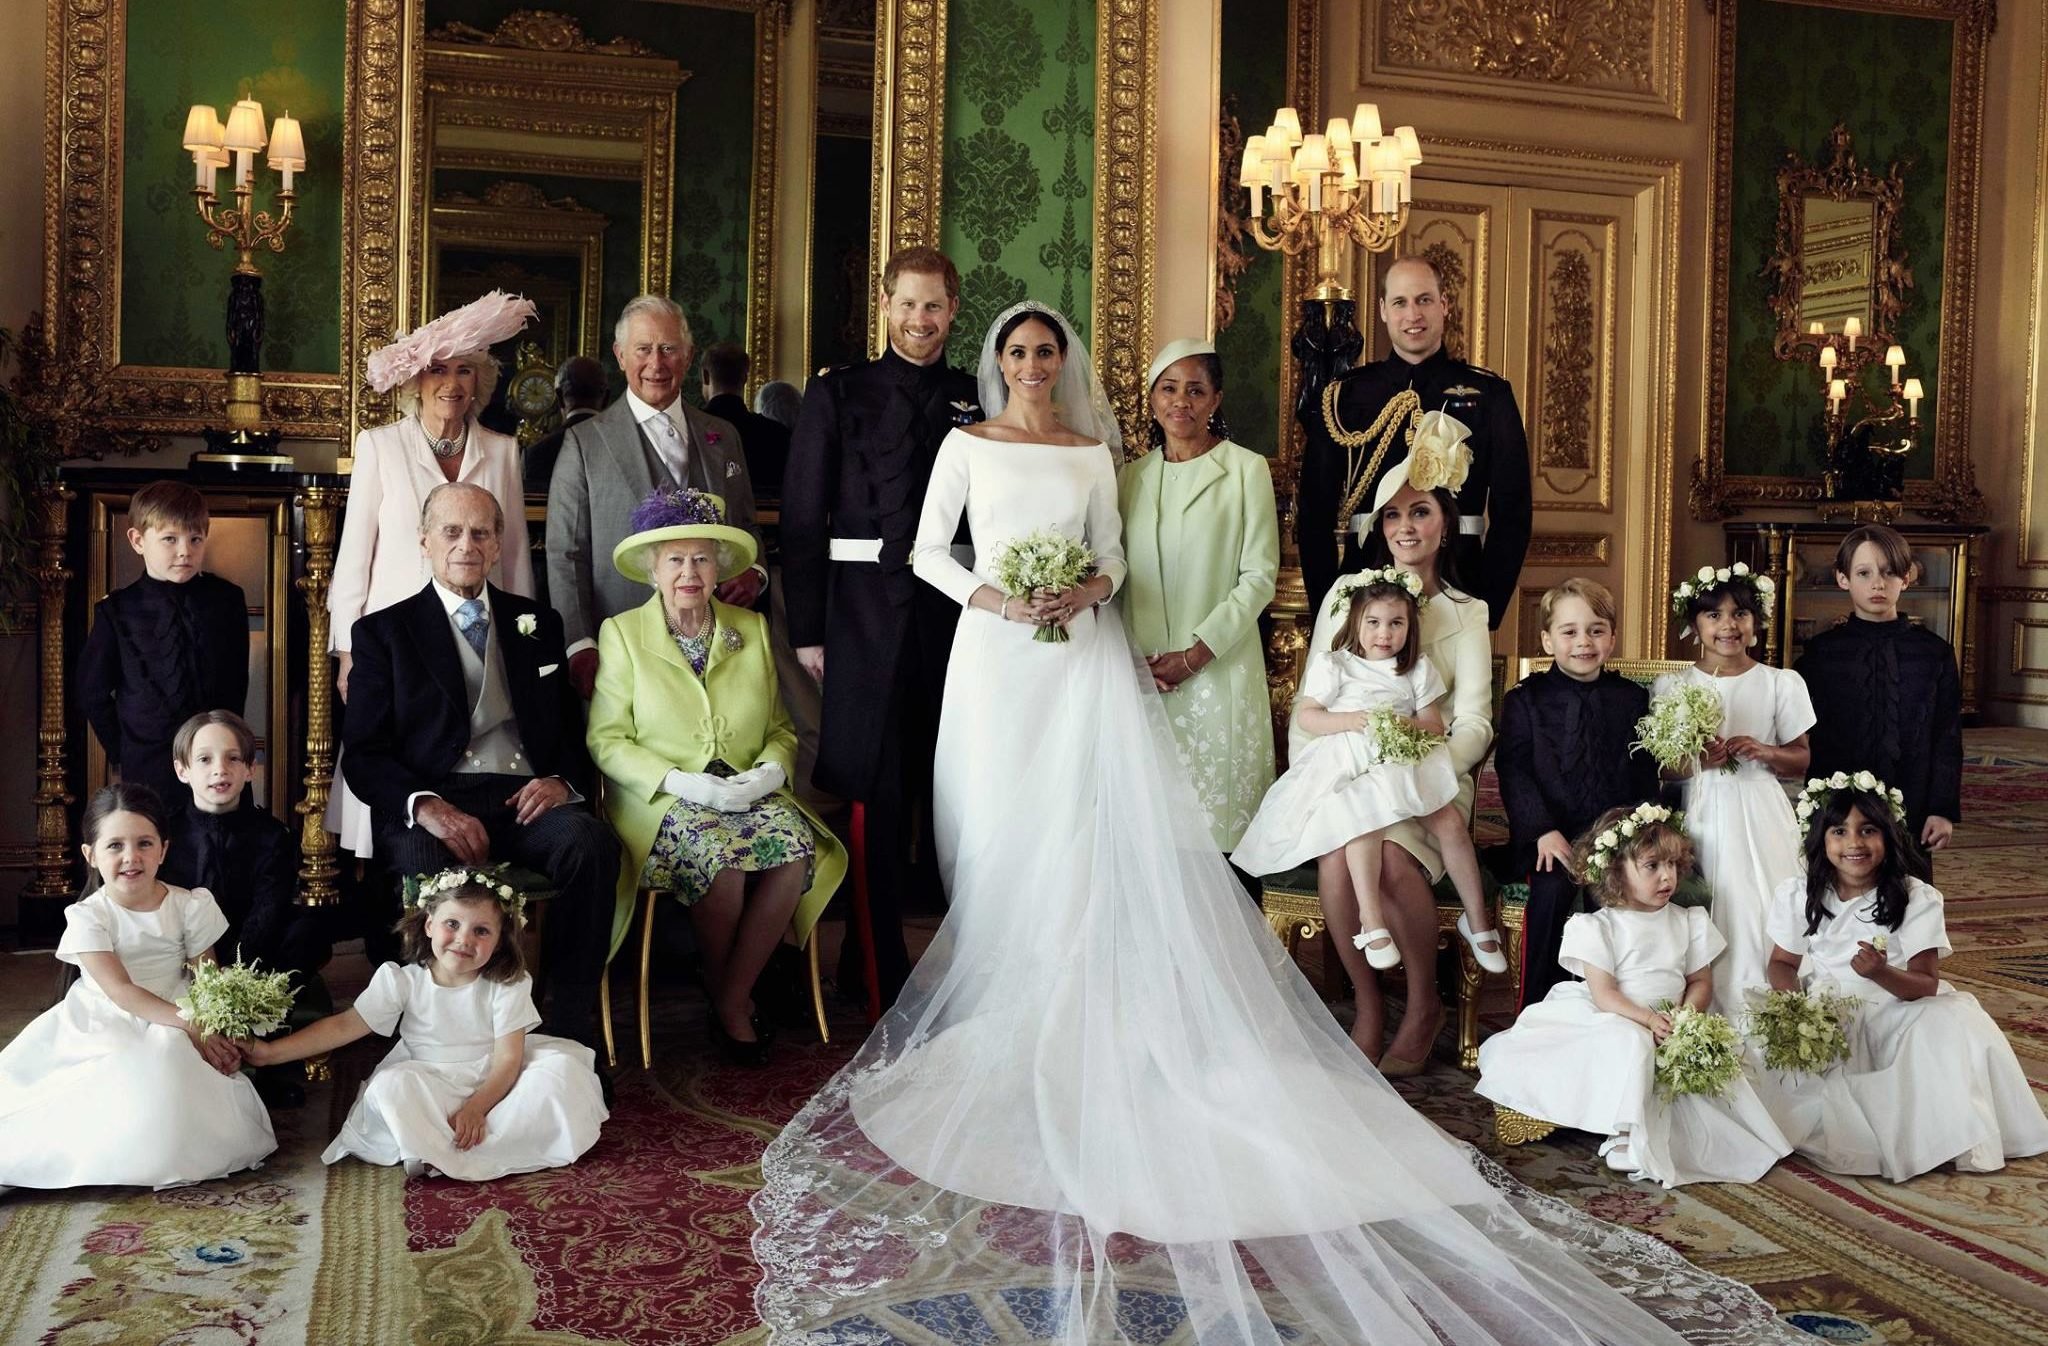 Модний дім Givenchy показав світу ескізи весільної сукні Меган Маркл, і вони прекрасні - фото 385482